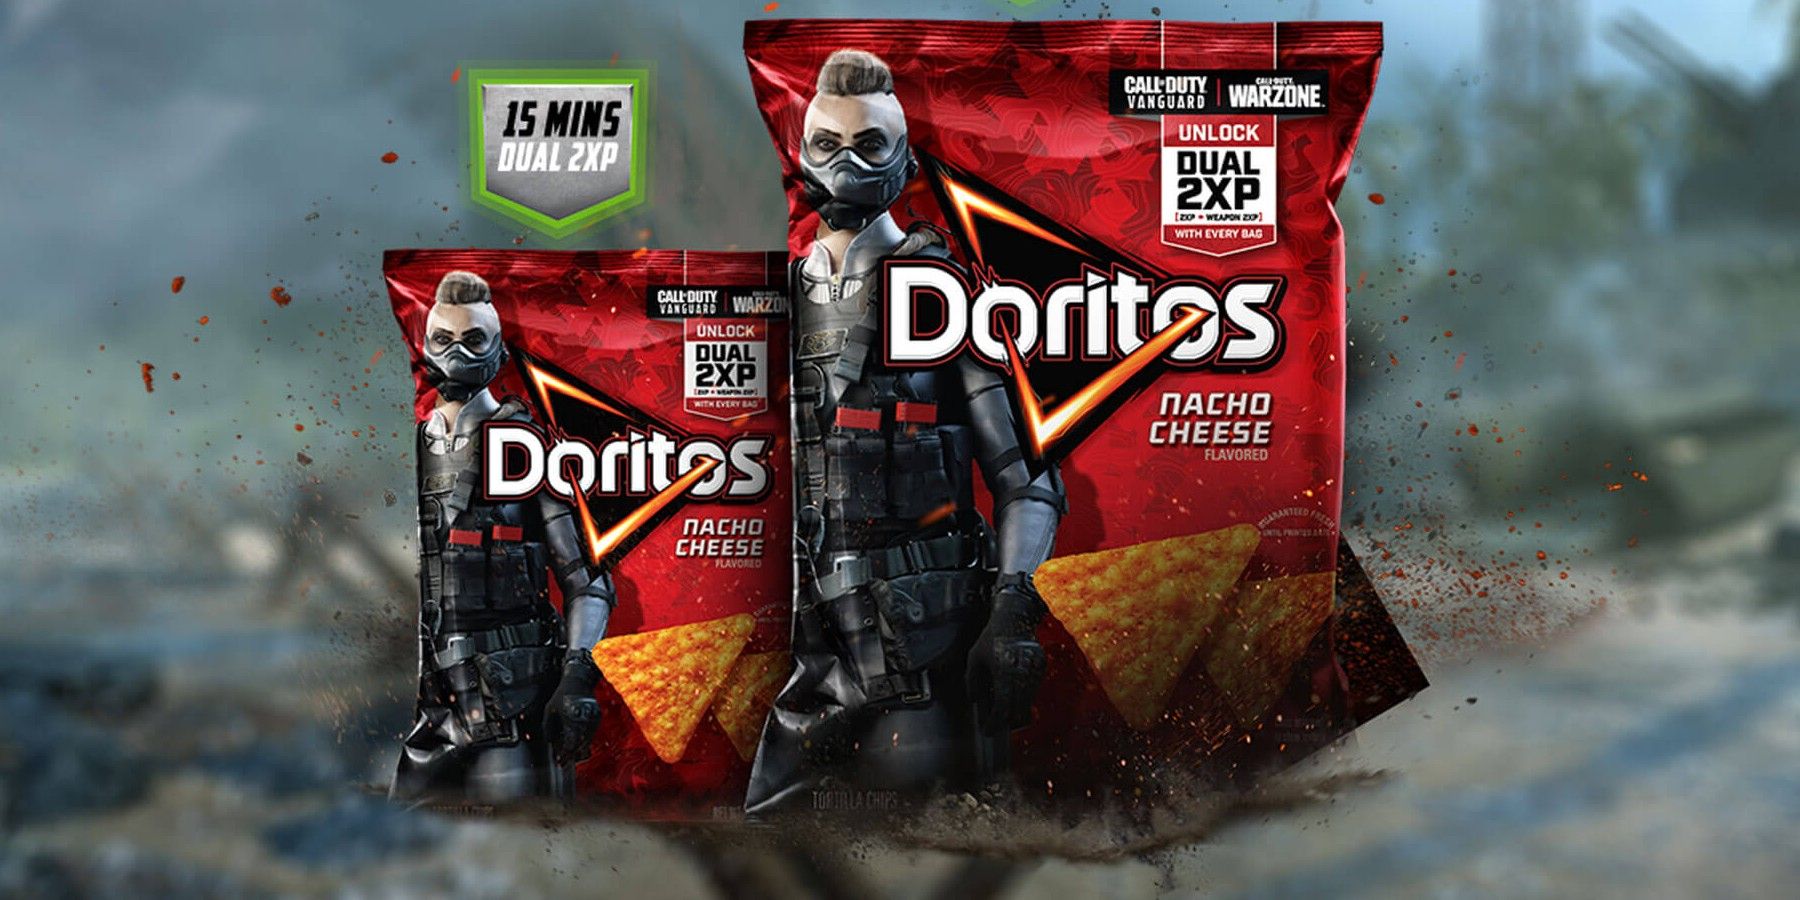 Call-of-Duty-Doritos-Double-XP